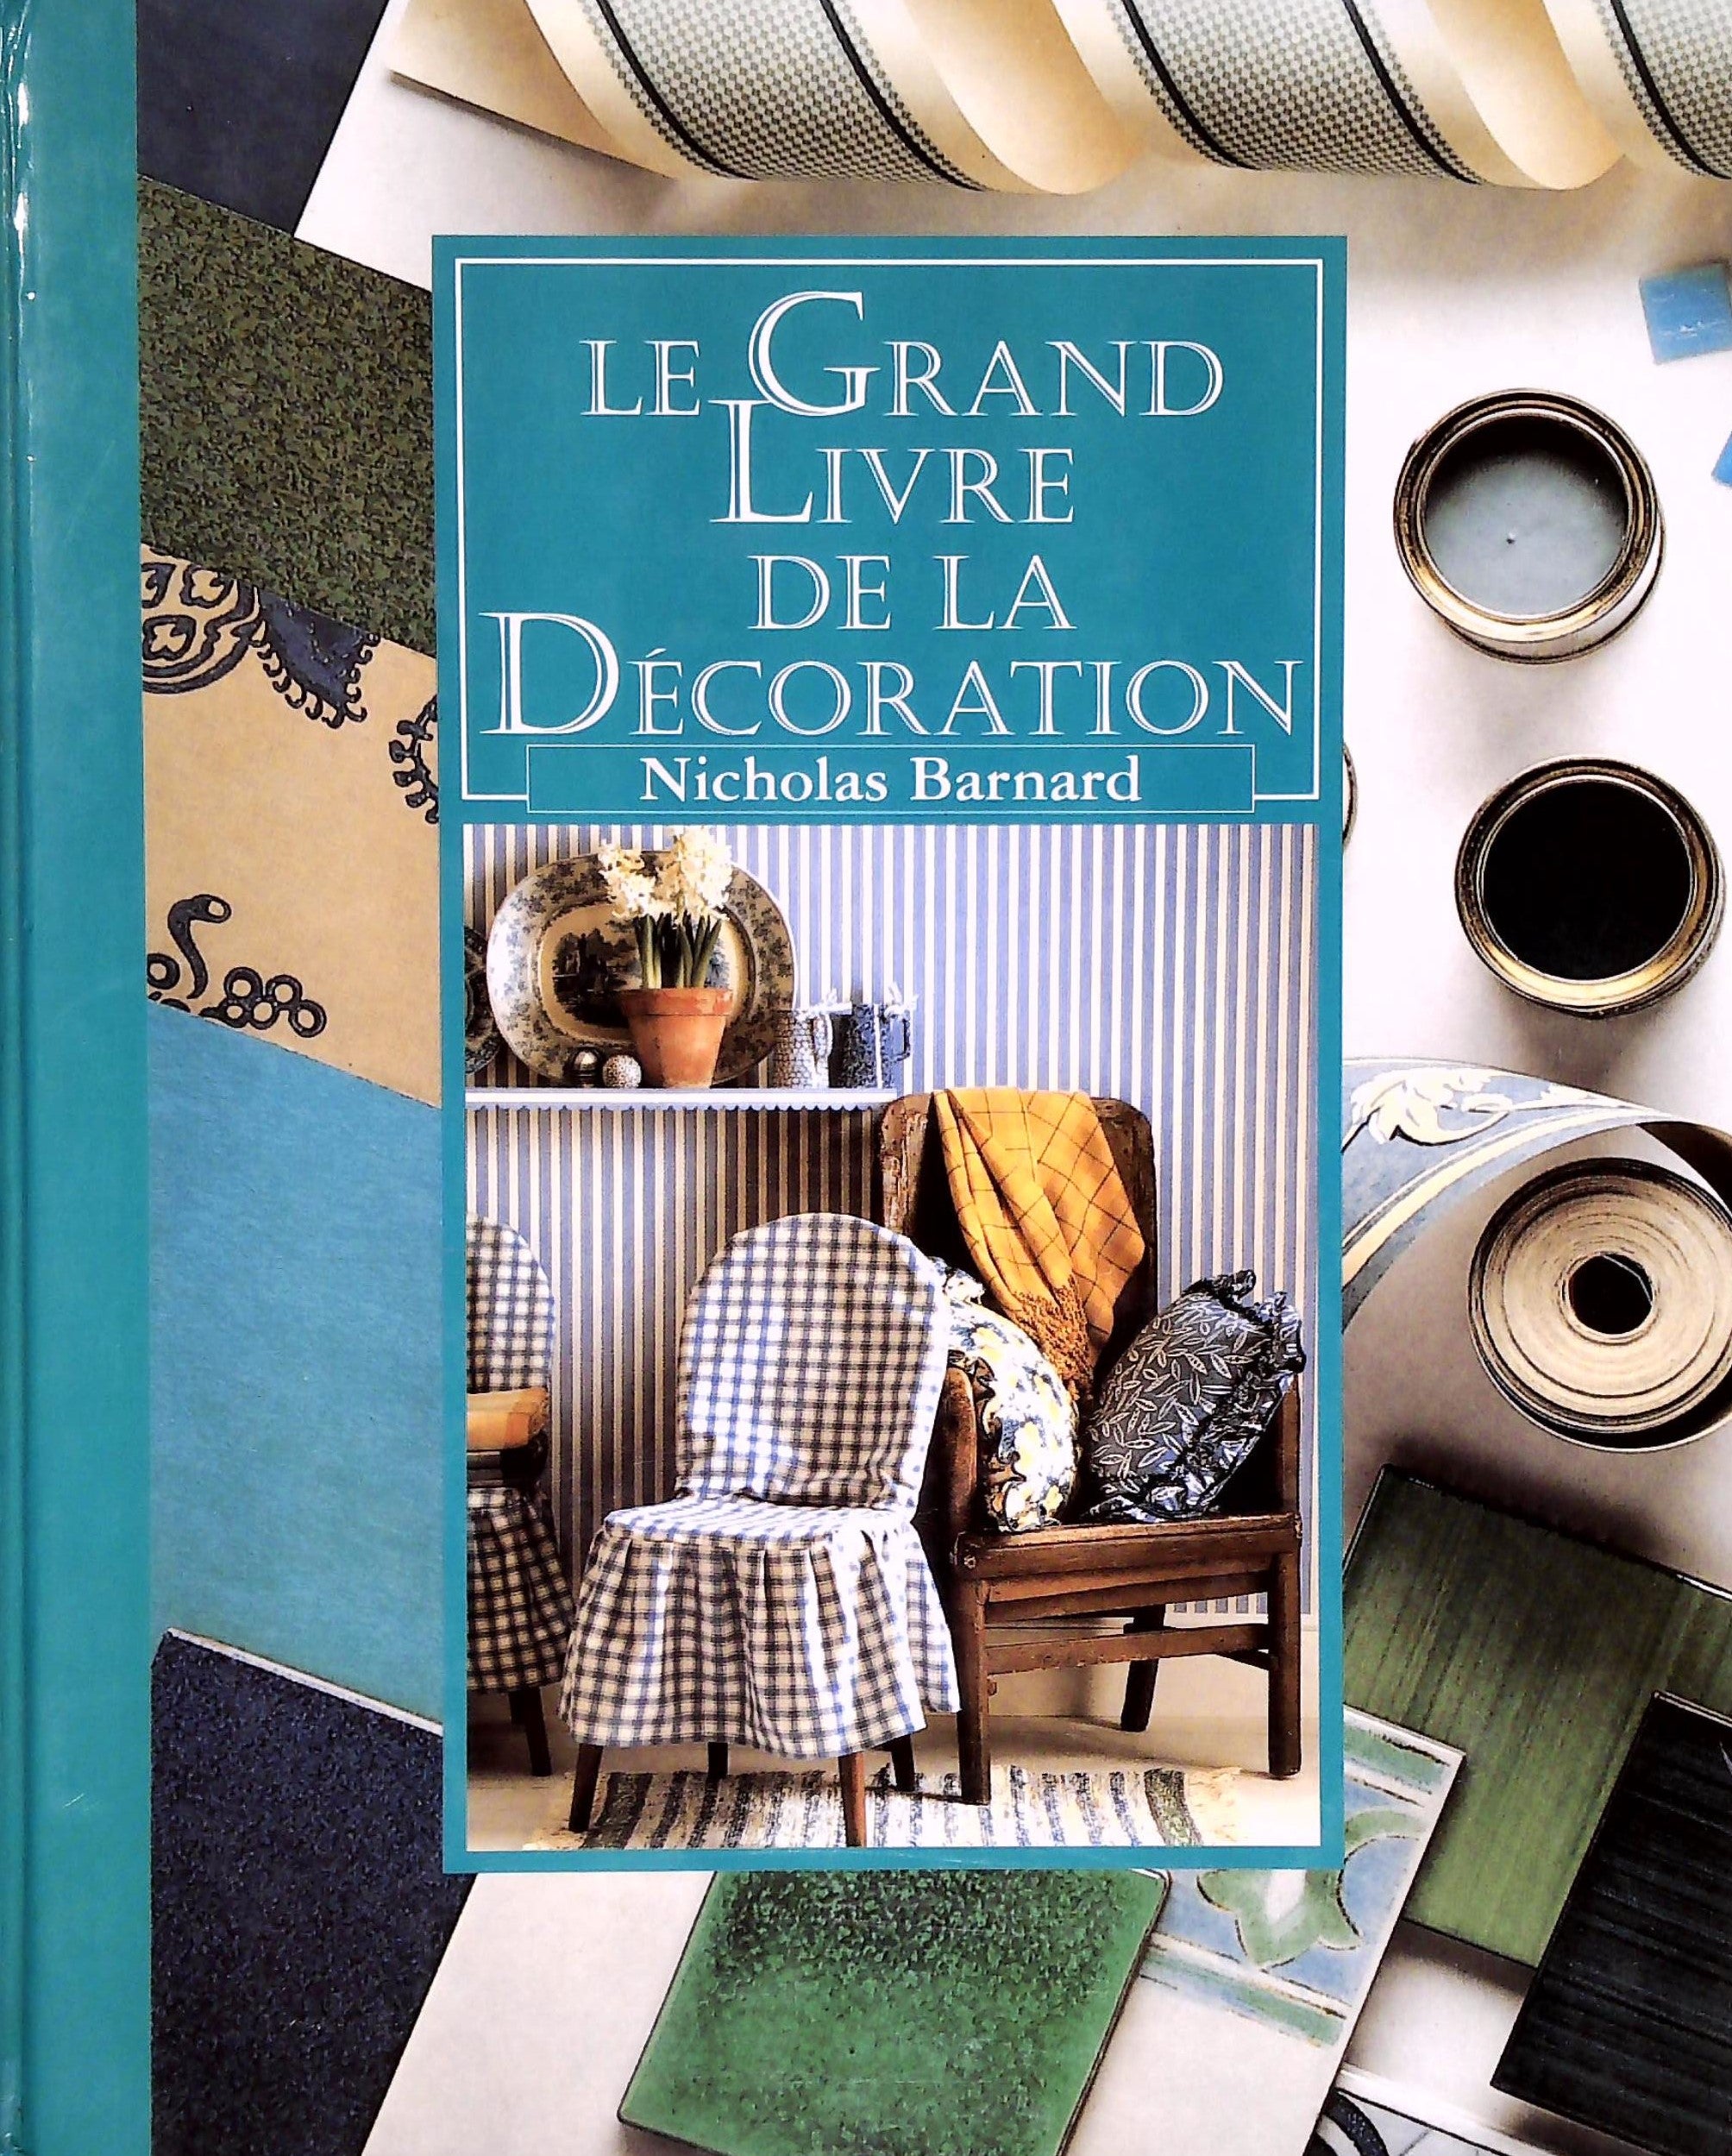 Livre ISBN 27242492019 Le grand livre de la décoration (Nicholas Barnard)